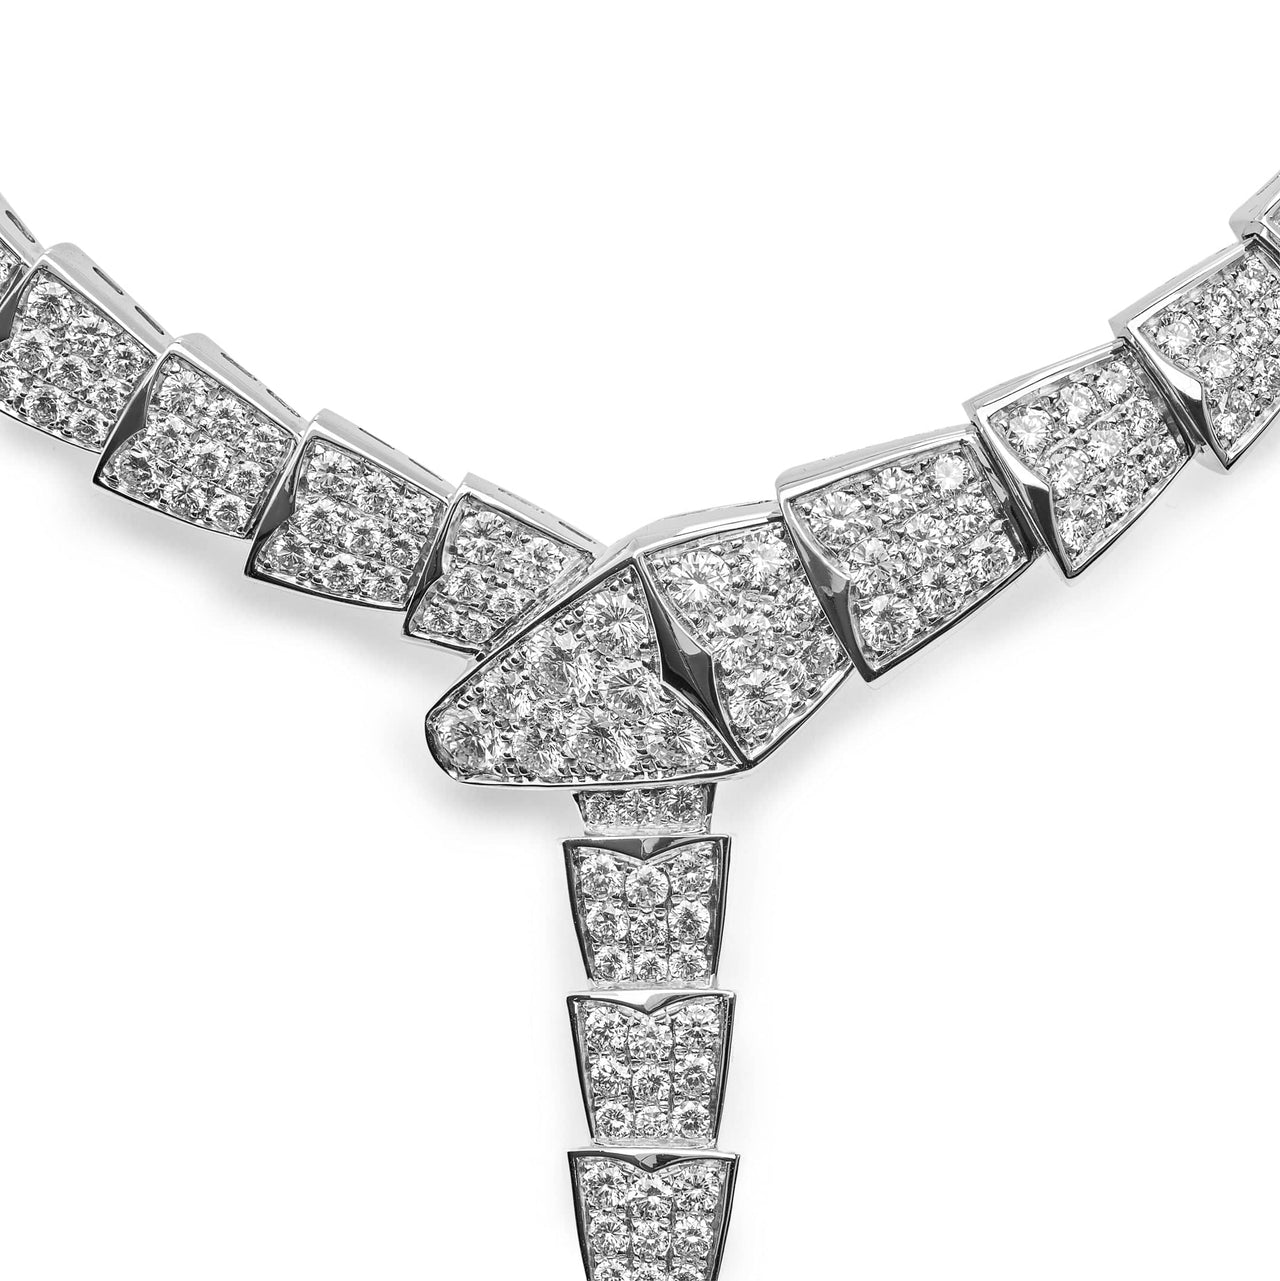 Necklace Bvlgari Serpenti Viper White Gold Diamond Necklace 348165 Wrist Aficionado